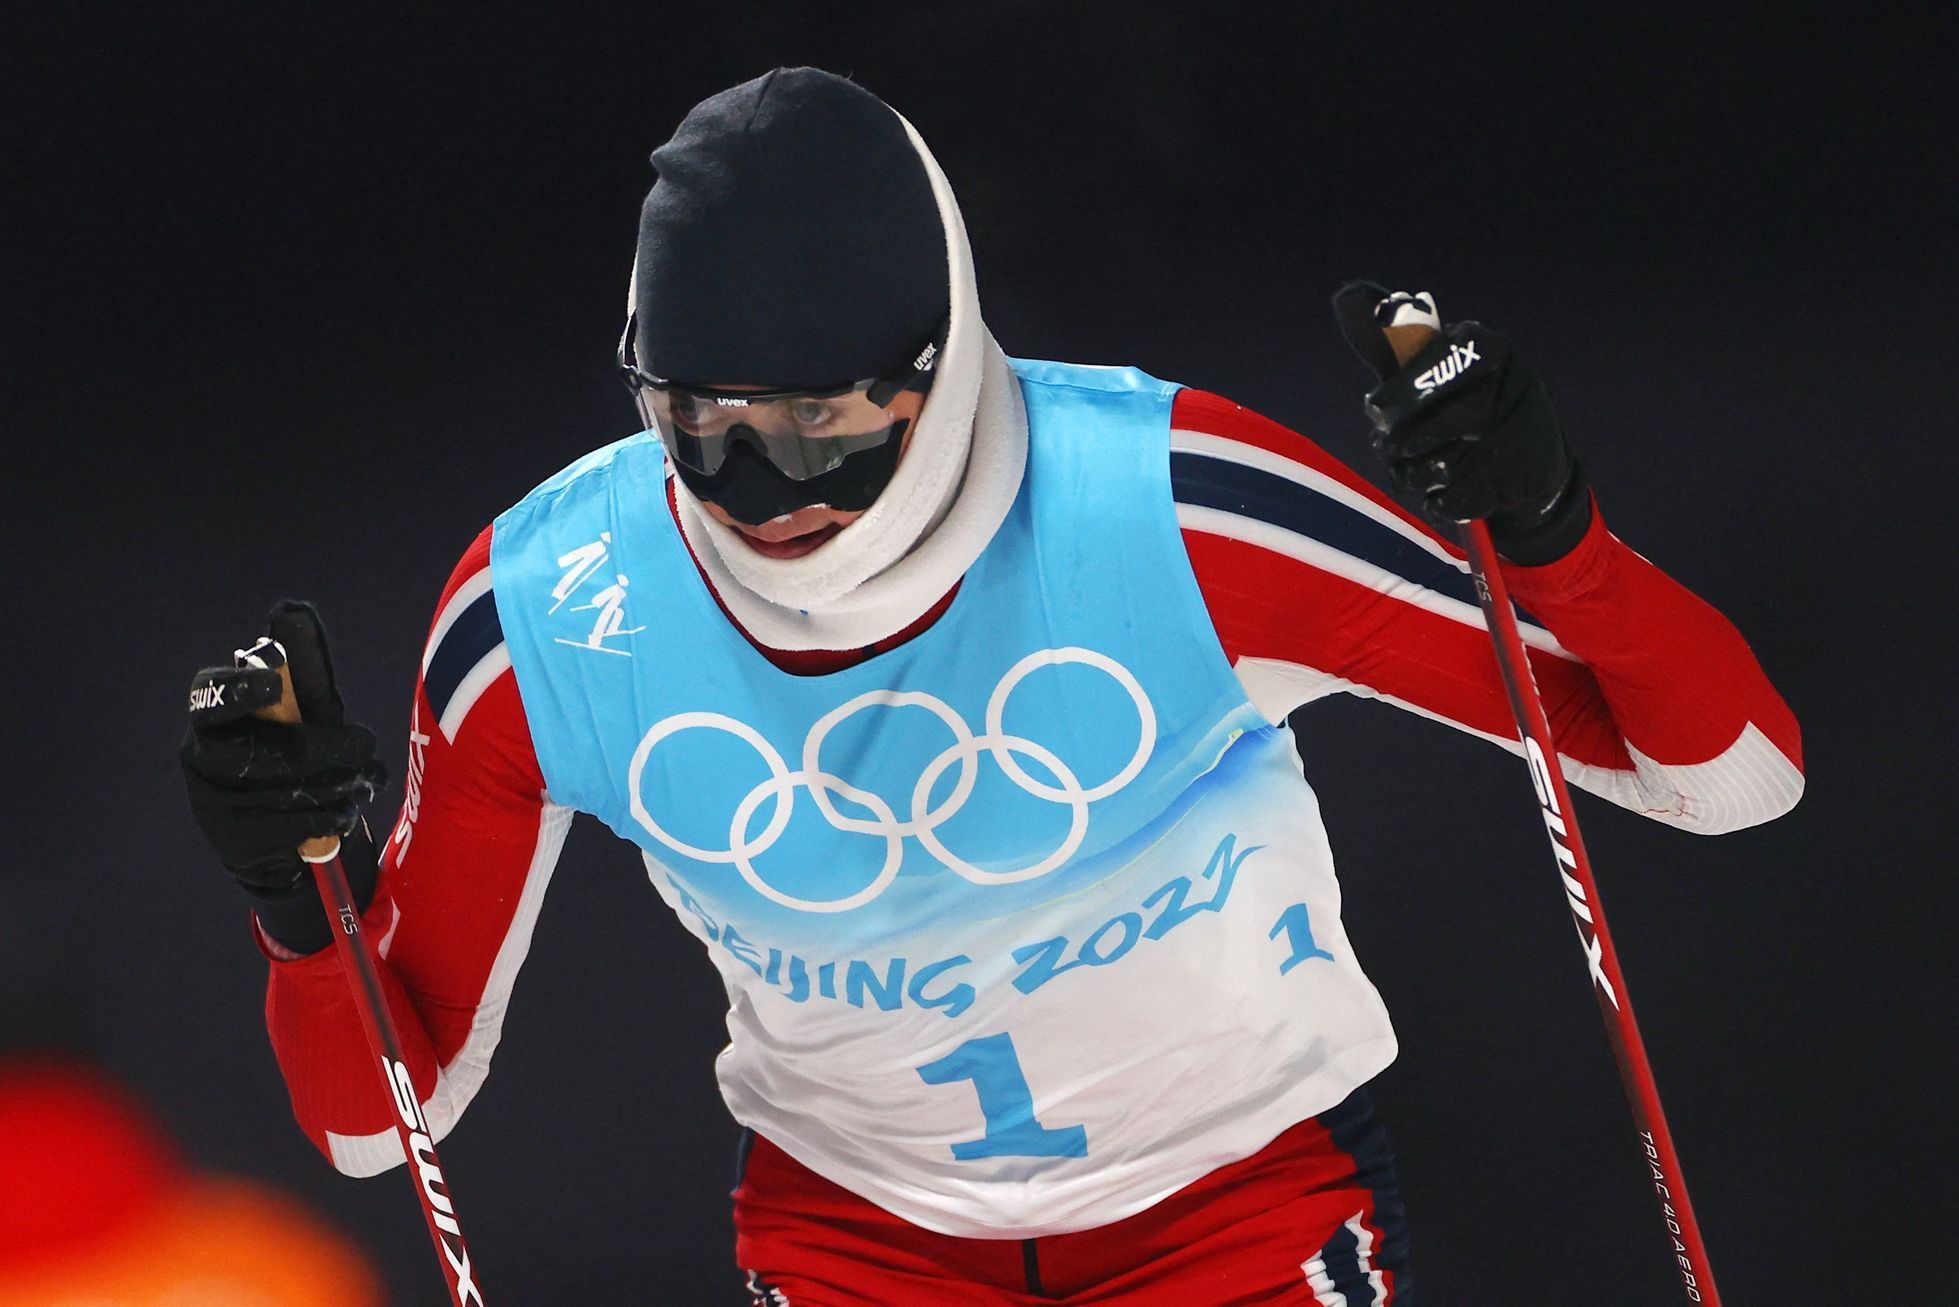 Jarl Magnus Riiber na olympiádě v Pekingu 2022